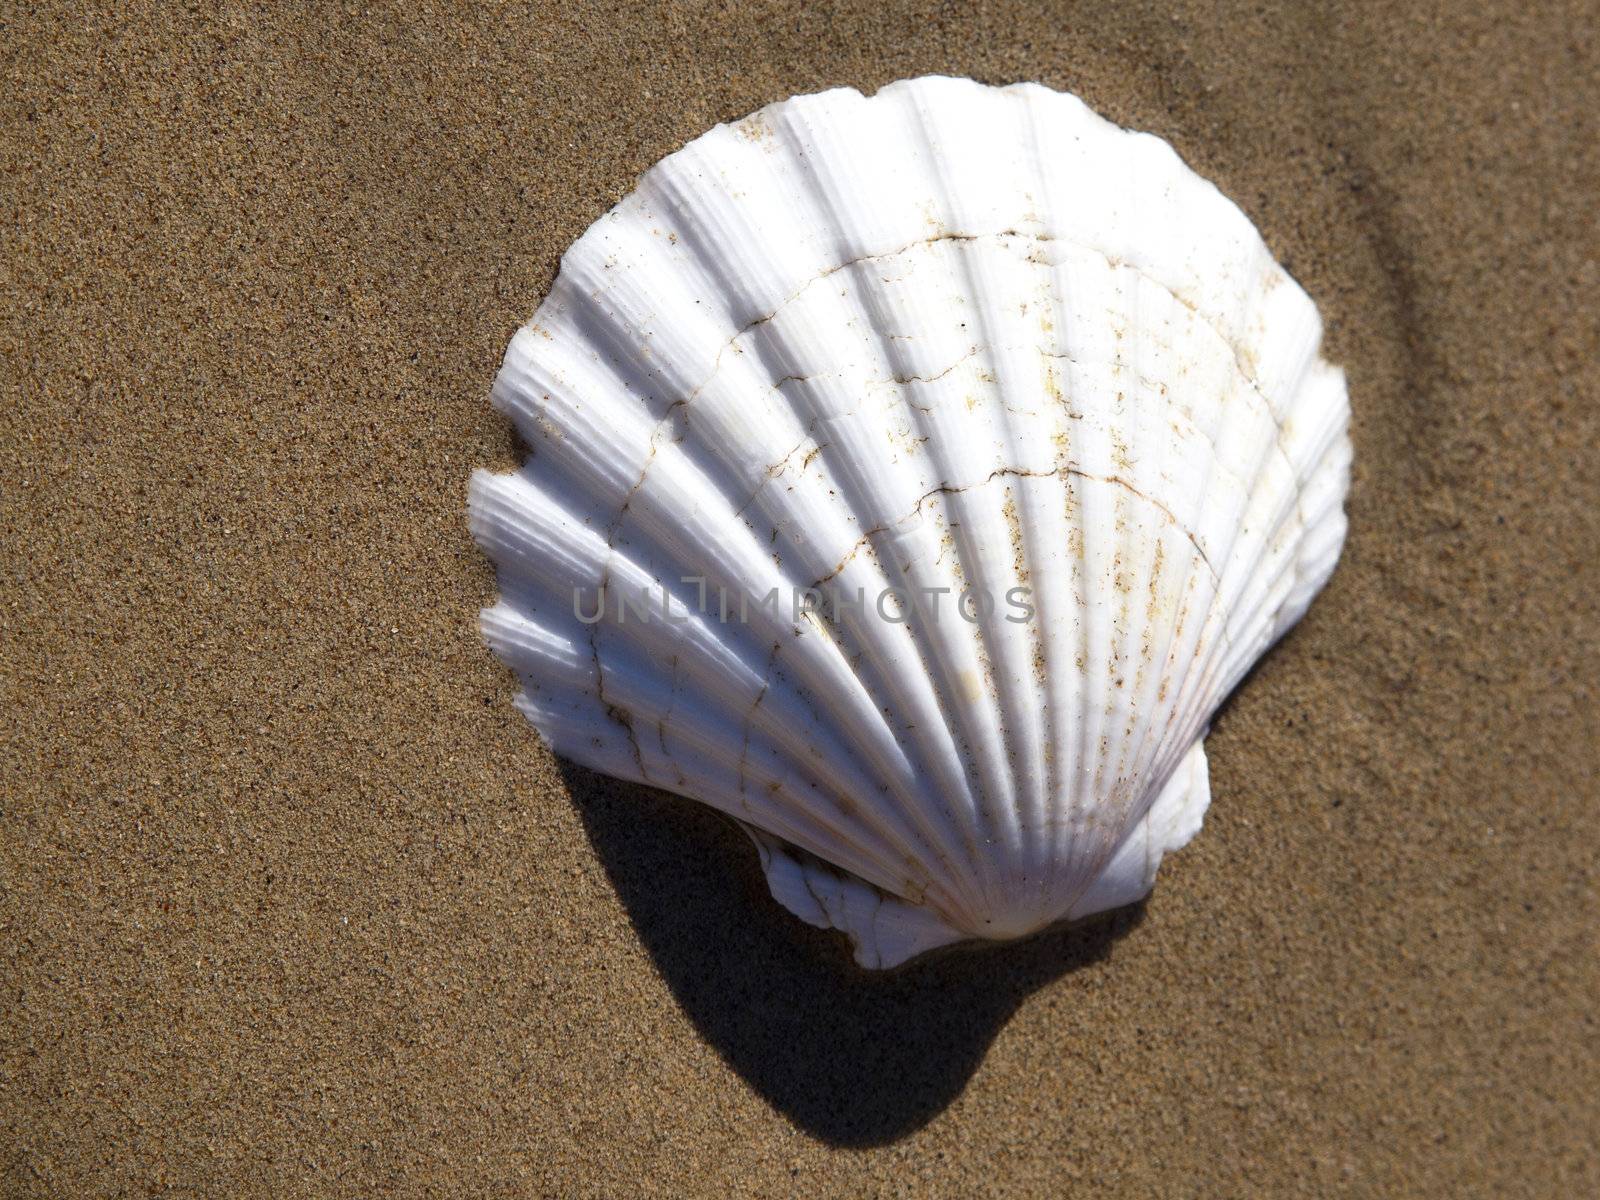 shell on the send beach near the sea